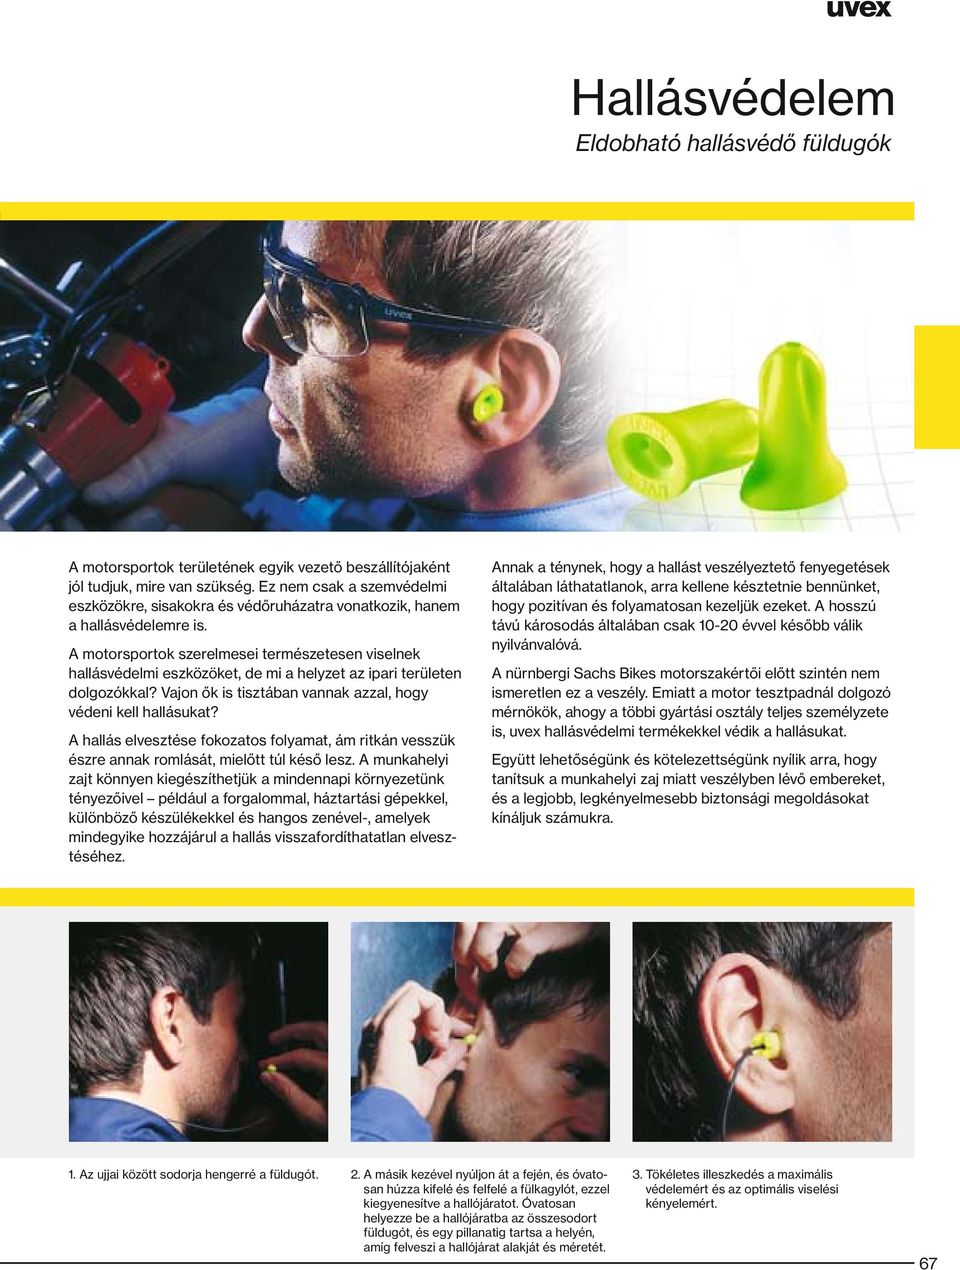 A motorsportok szerelmesei természetesen viselnek hallásvédelmi eszközöket, de mi a helyzet az ipari területen dolgozókkal? Vajon ők is tisztában vannak azzal, hogy védeni kell hallásukat?